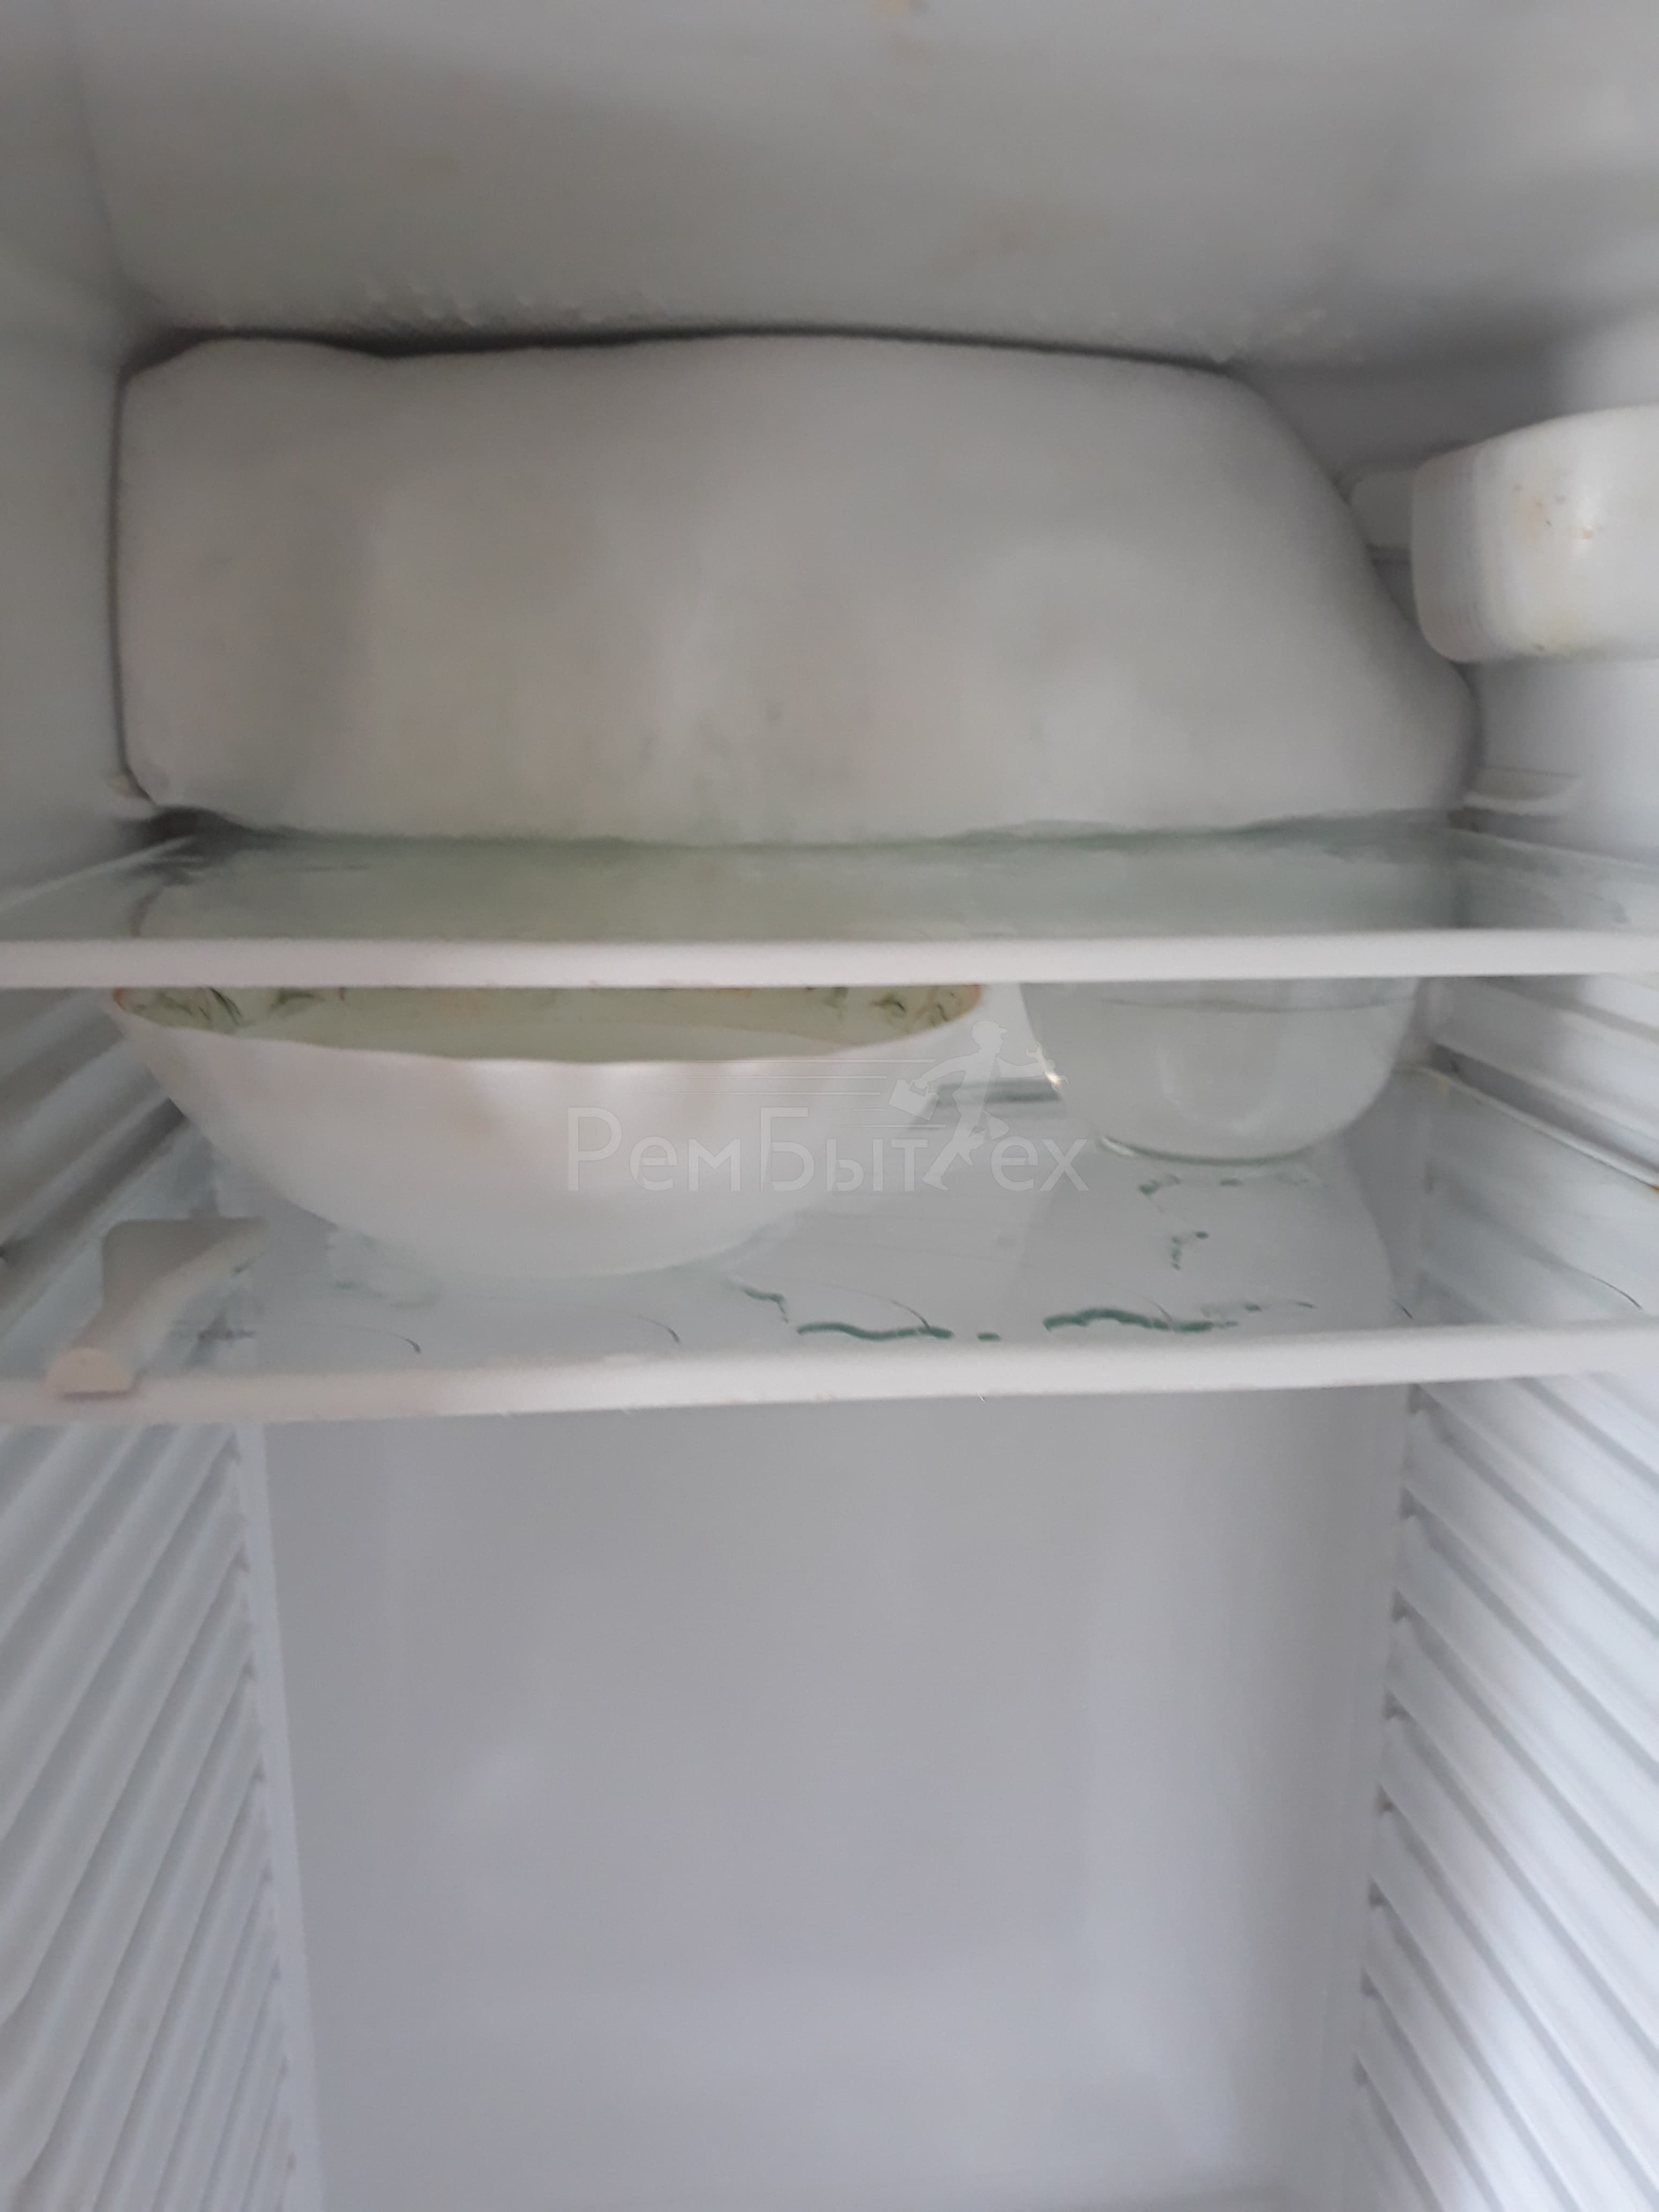 Намерзает лед на испарителе в холодильнике атлант